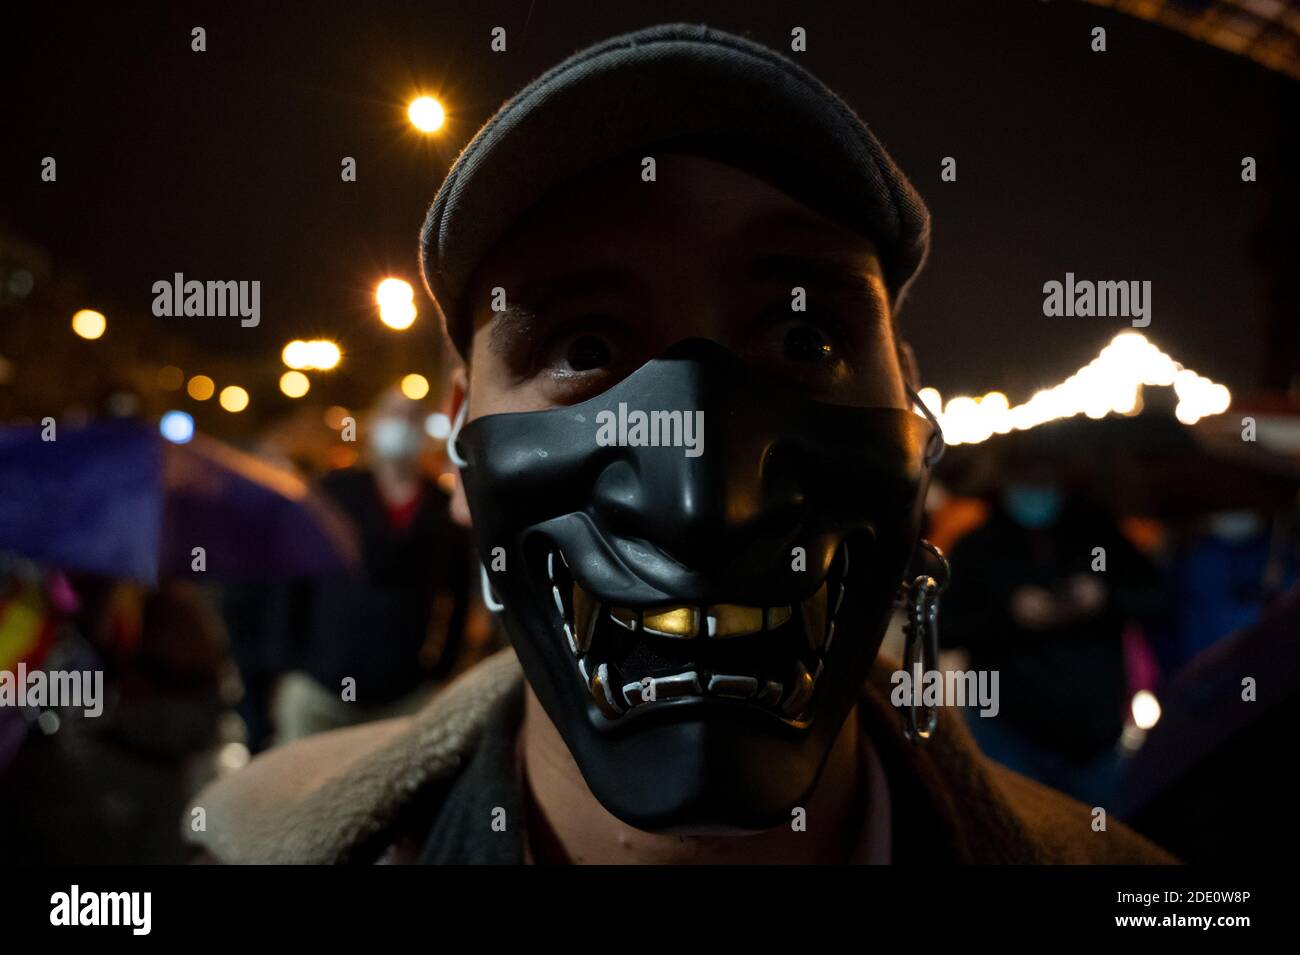 Madrid, Spagna. 27 Nov 2020. Un uomo che indossa una maschera facciale fantasia per proteggere contro la diffusione del coronavirus protestando contro la censura in Social Networks di fronte al quartier generale di Twitter. Credit: Marcos del Mazo/Alamy Live News Foto Stock